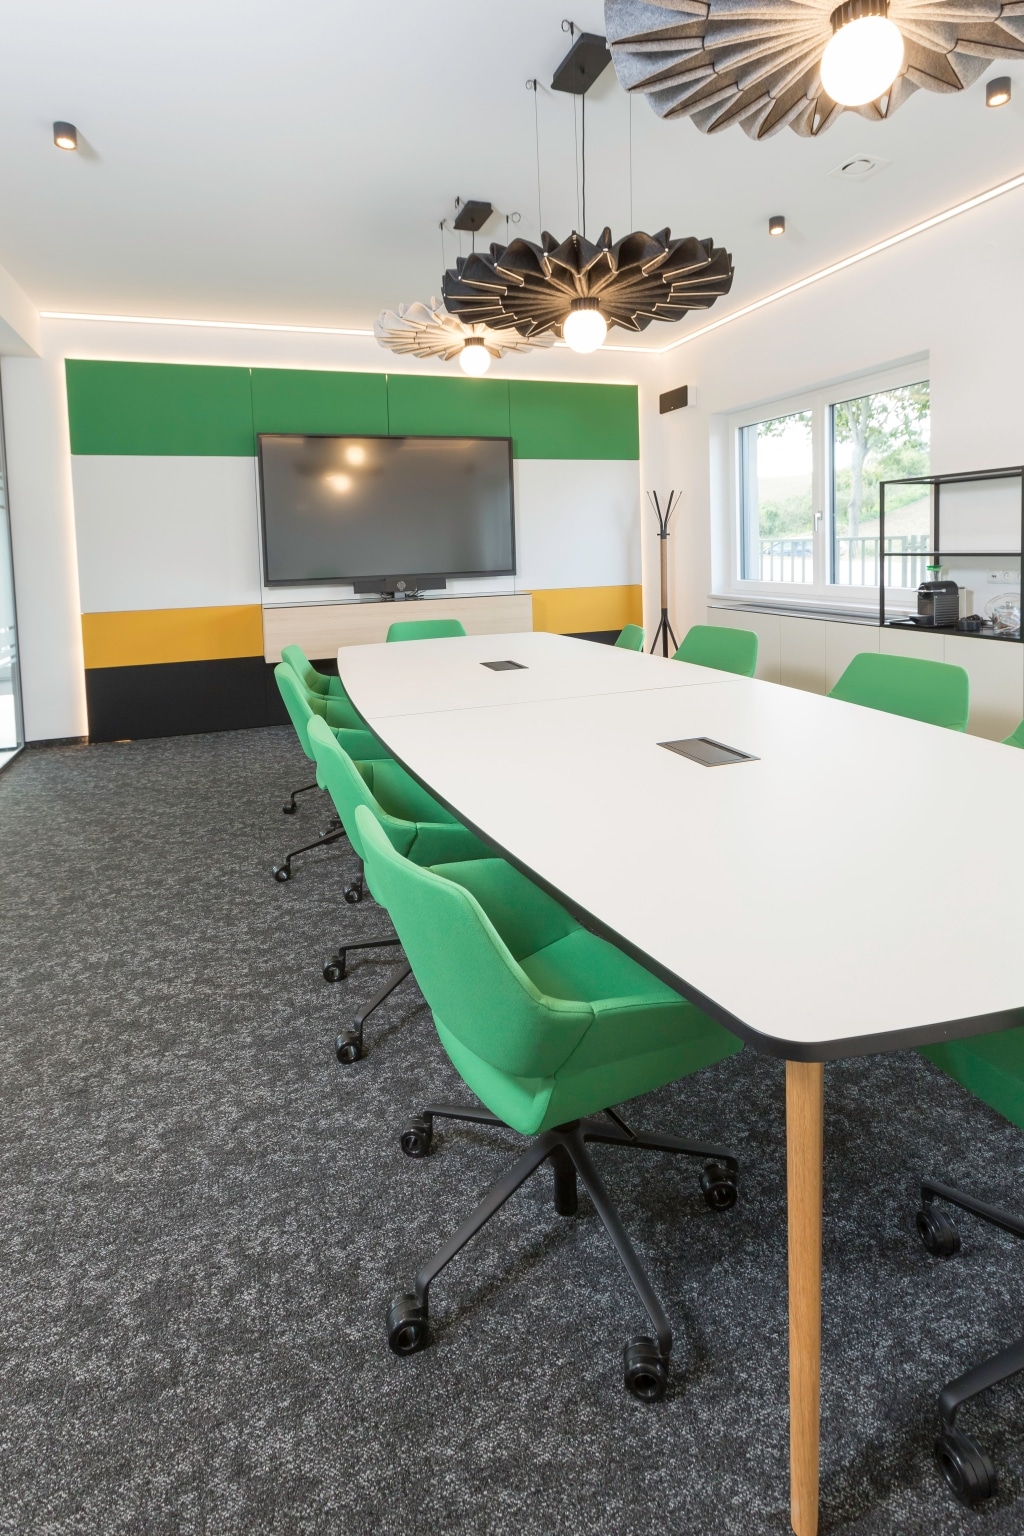 Besprechungsraum mit Konferenztisch und Stühlen sowie Framework Schränke